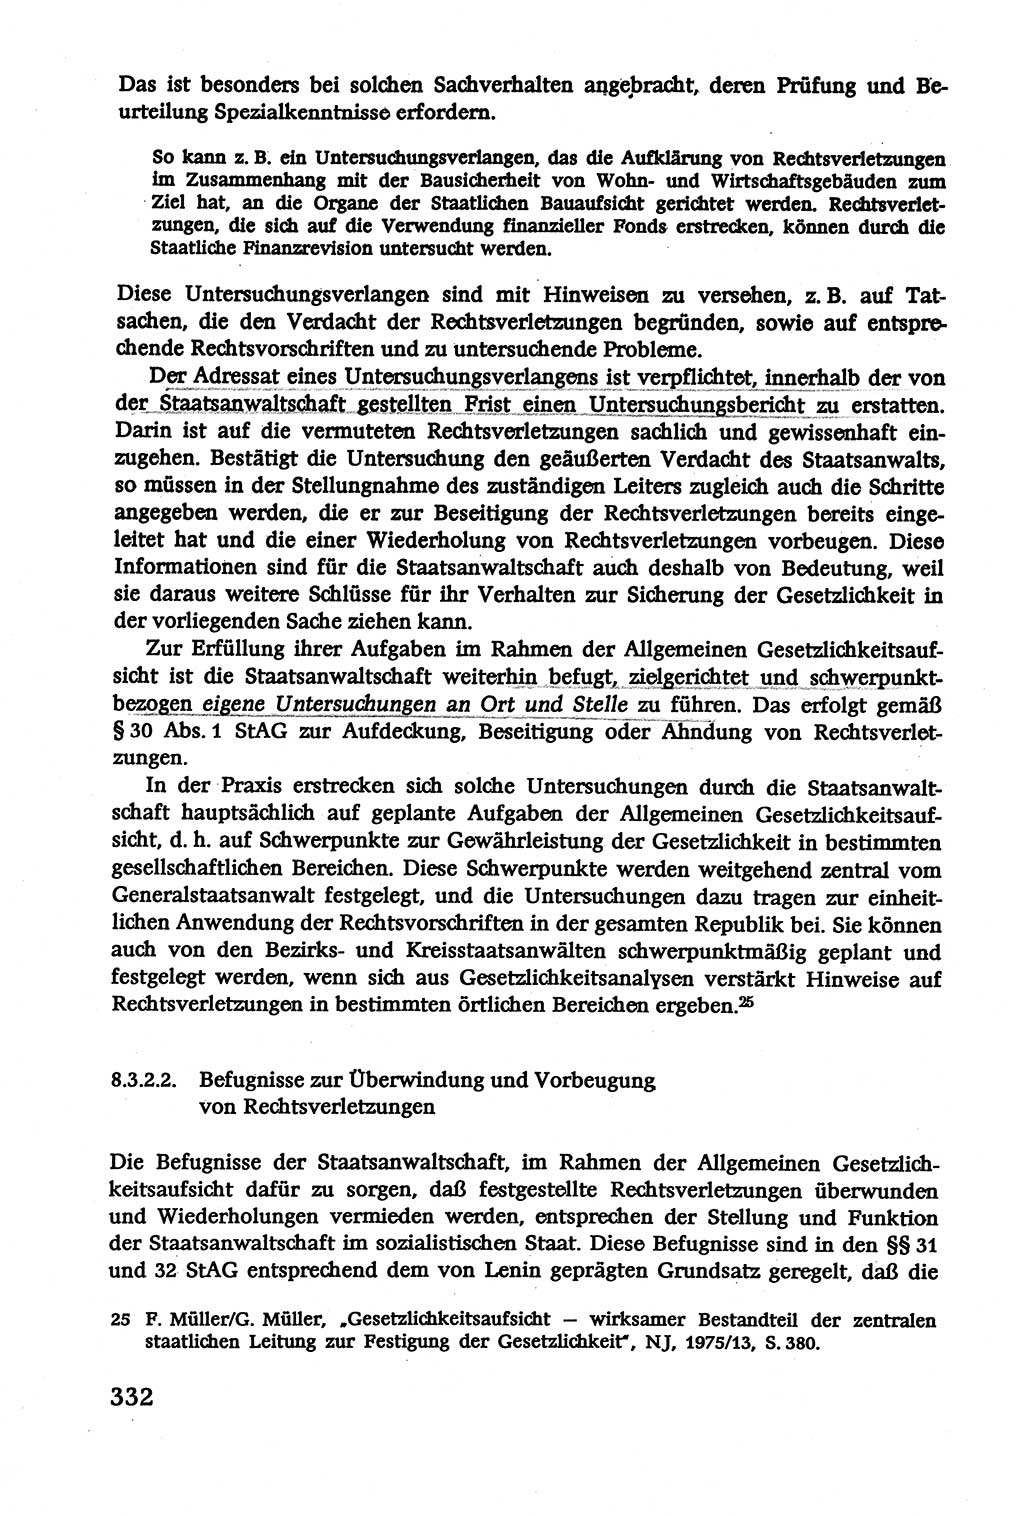 Verwaltungsrecht [Deutsche Demokratische Republik (DDR)], Lehrbuch 1979, Seite 332 (Verw.-R. DDR Lb. 1979, S. 332)